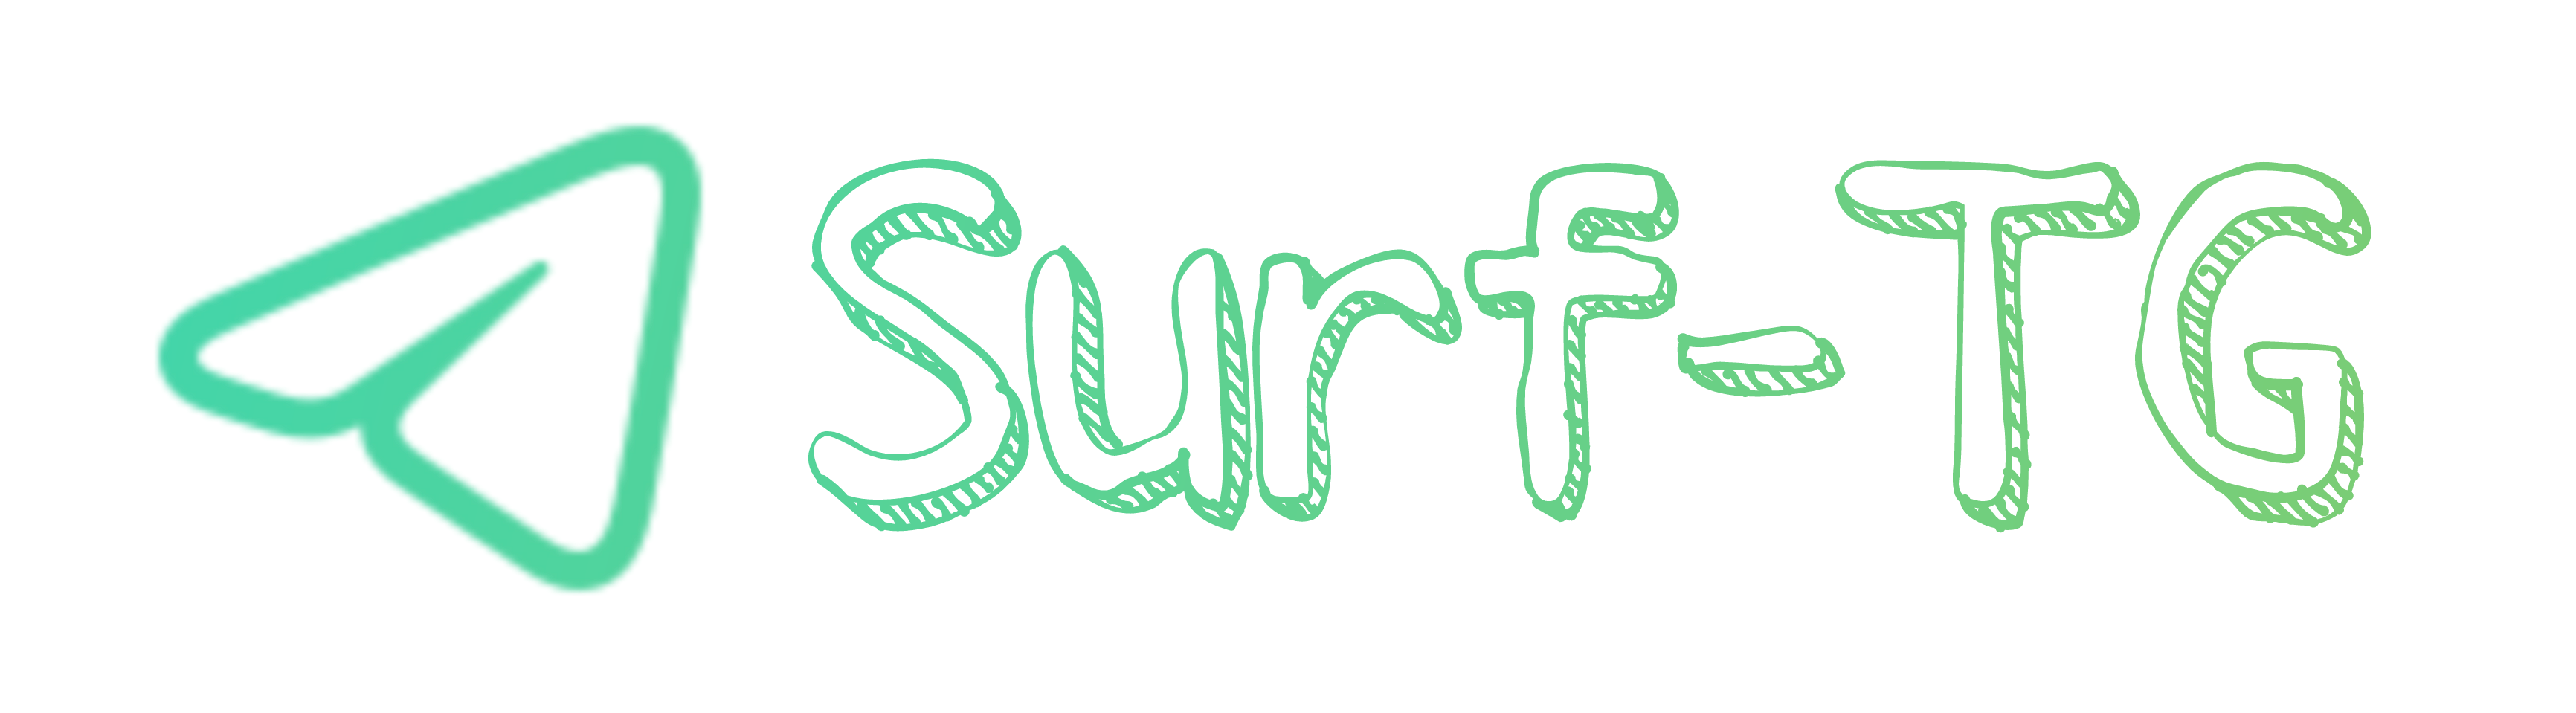 Surf_TG